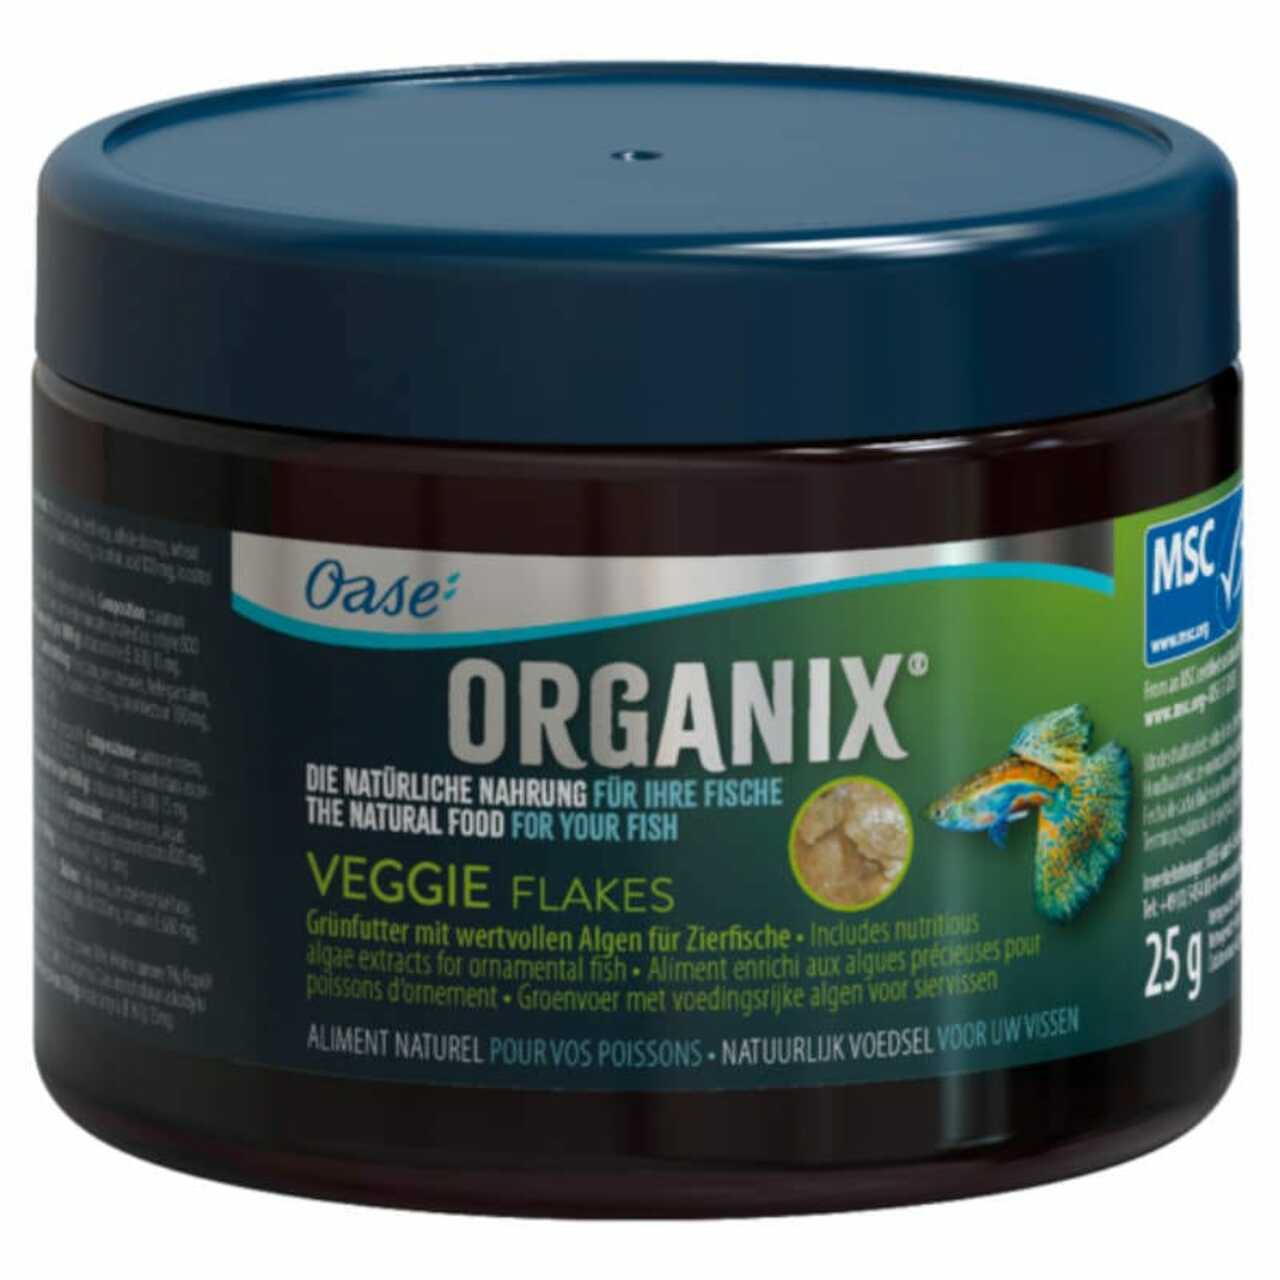 Oase Organix Veggie Flakes